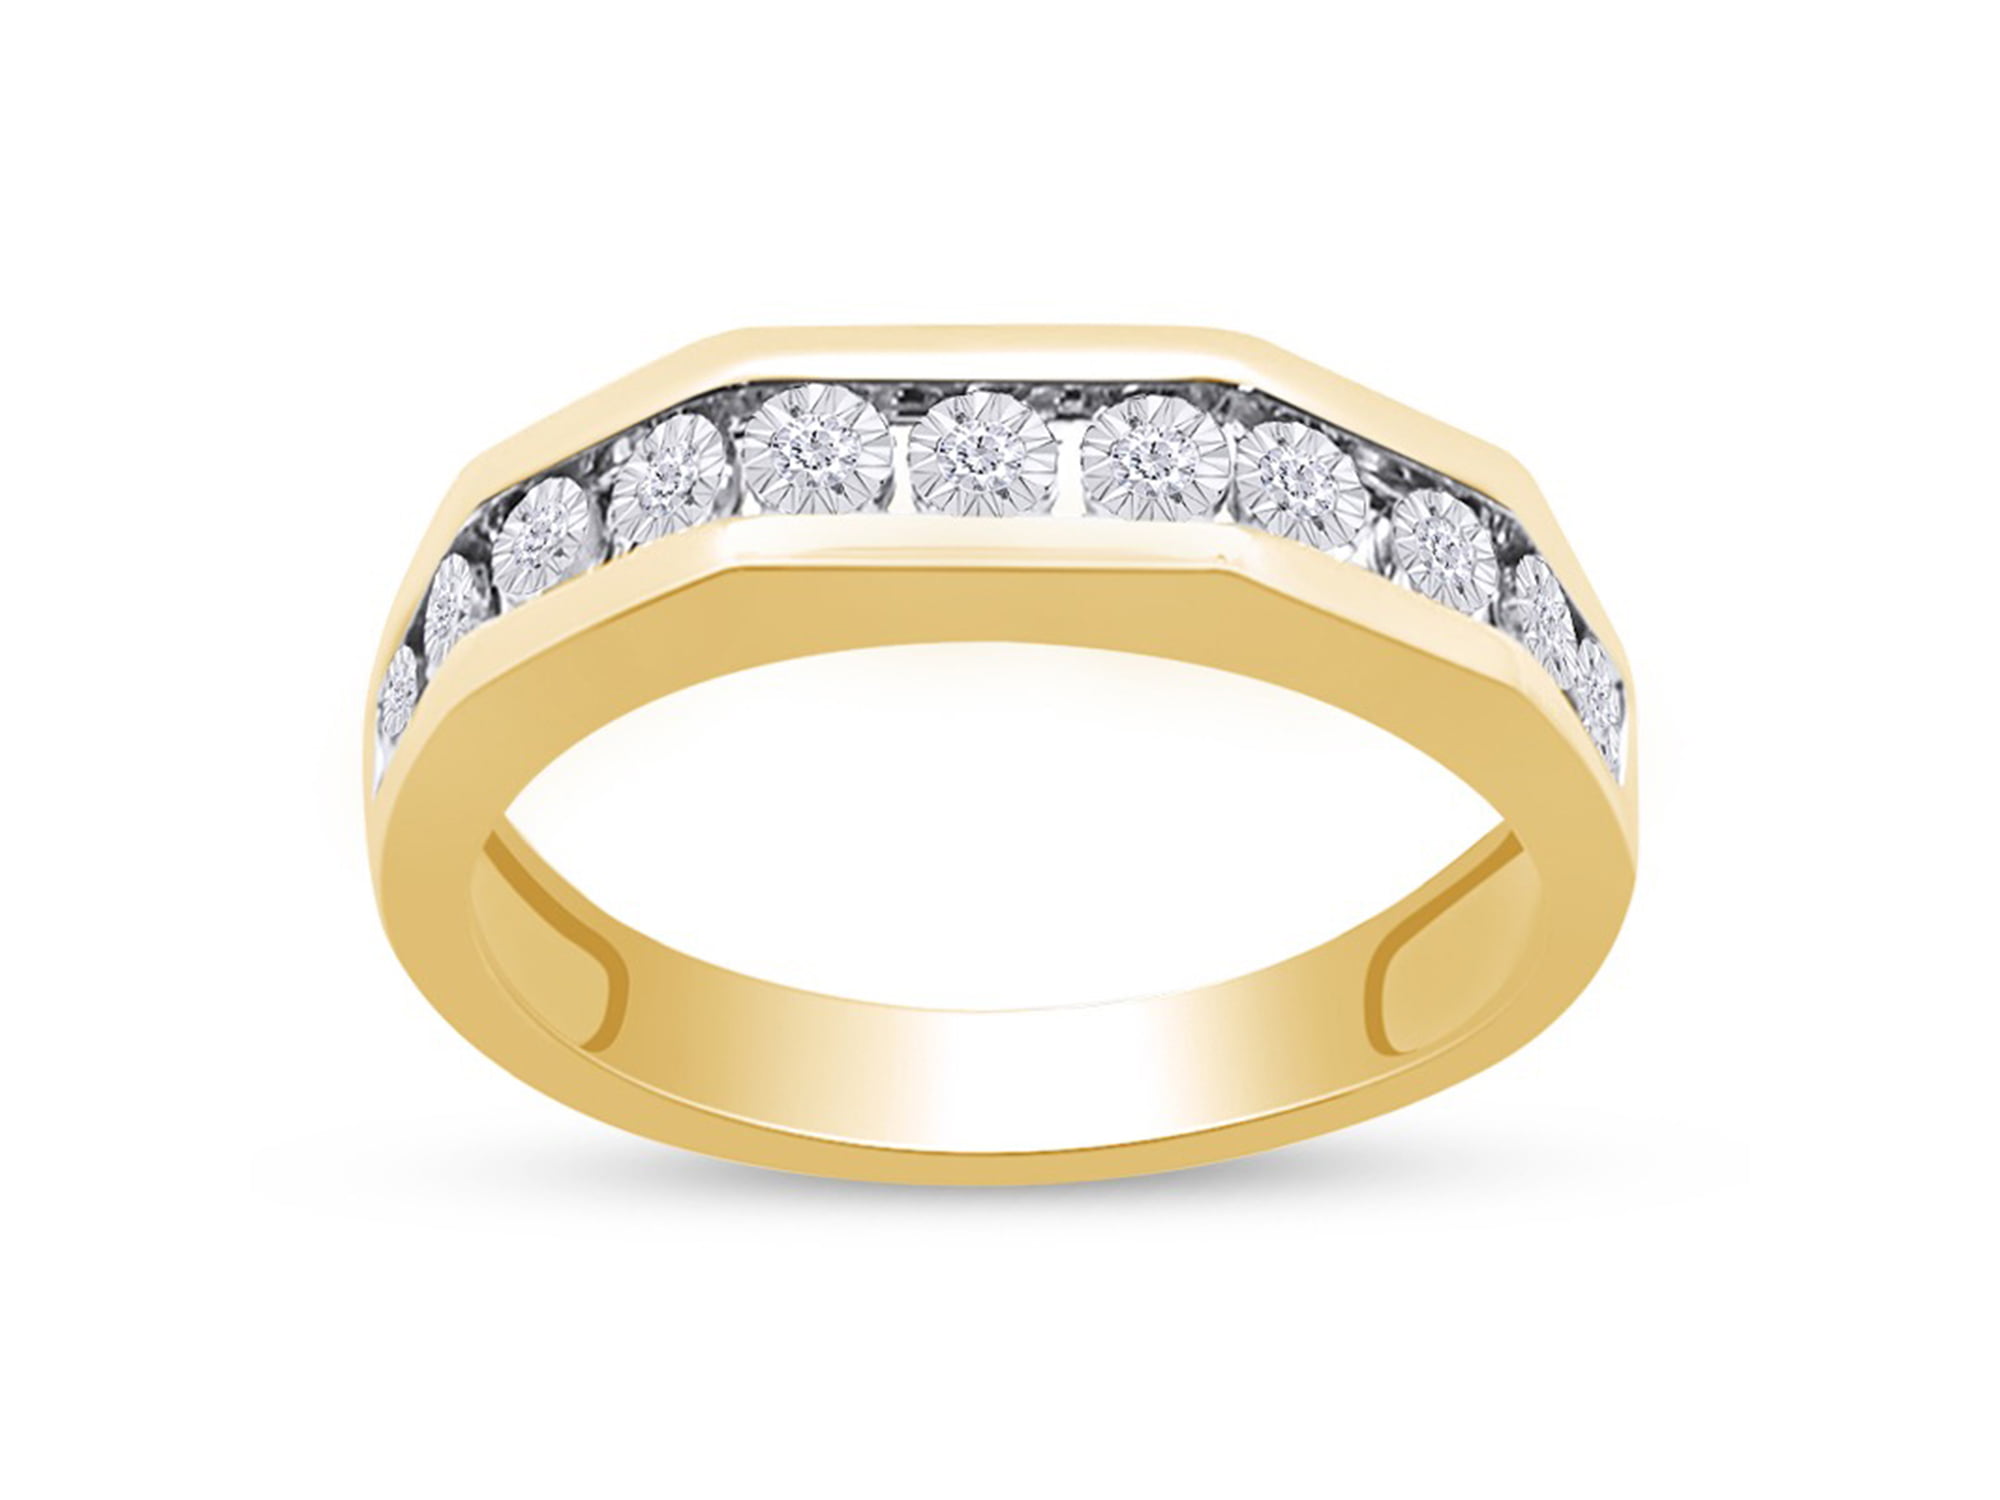 10k Yellow Gold 1/8 Carat Diamond Fashion Wedding Ring GH I2-I3